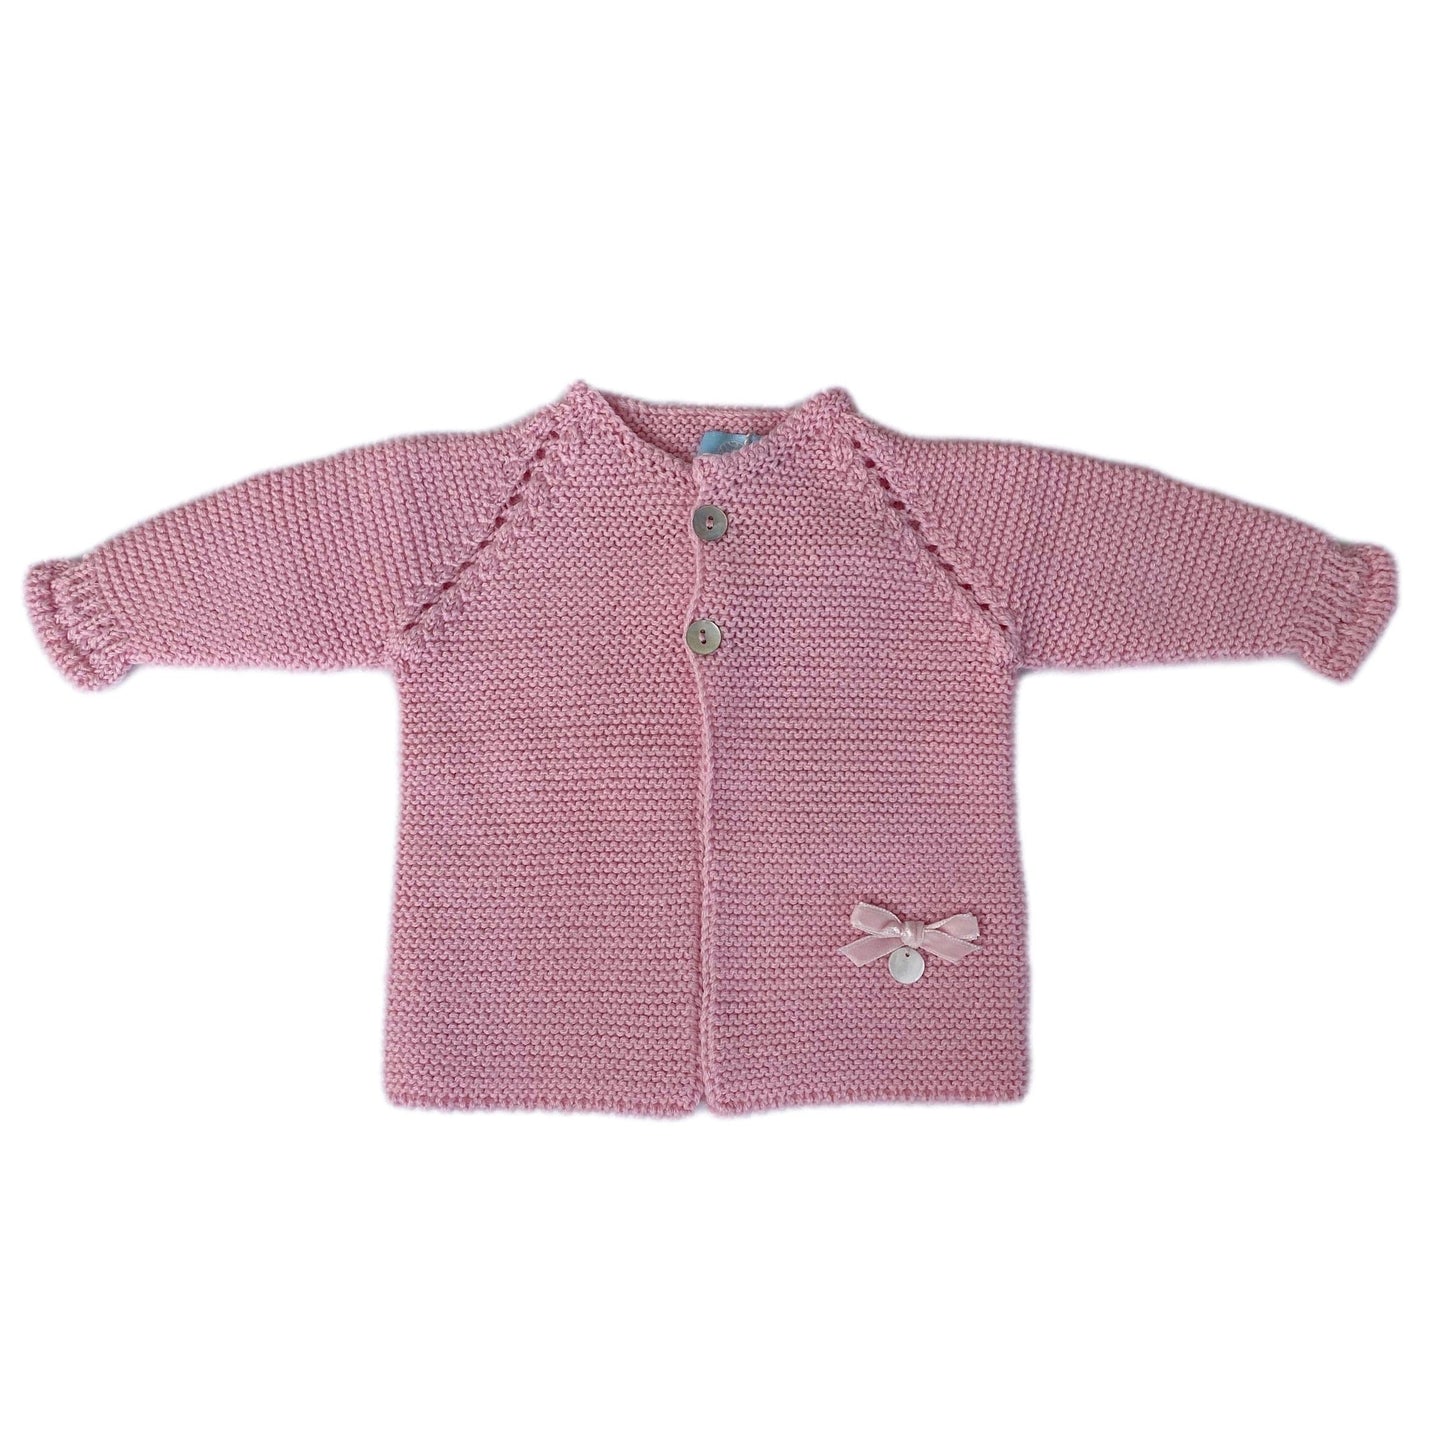 Merino Wool Pink Sweater - Petit Maison Kids